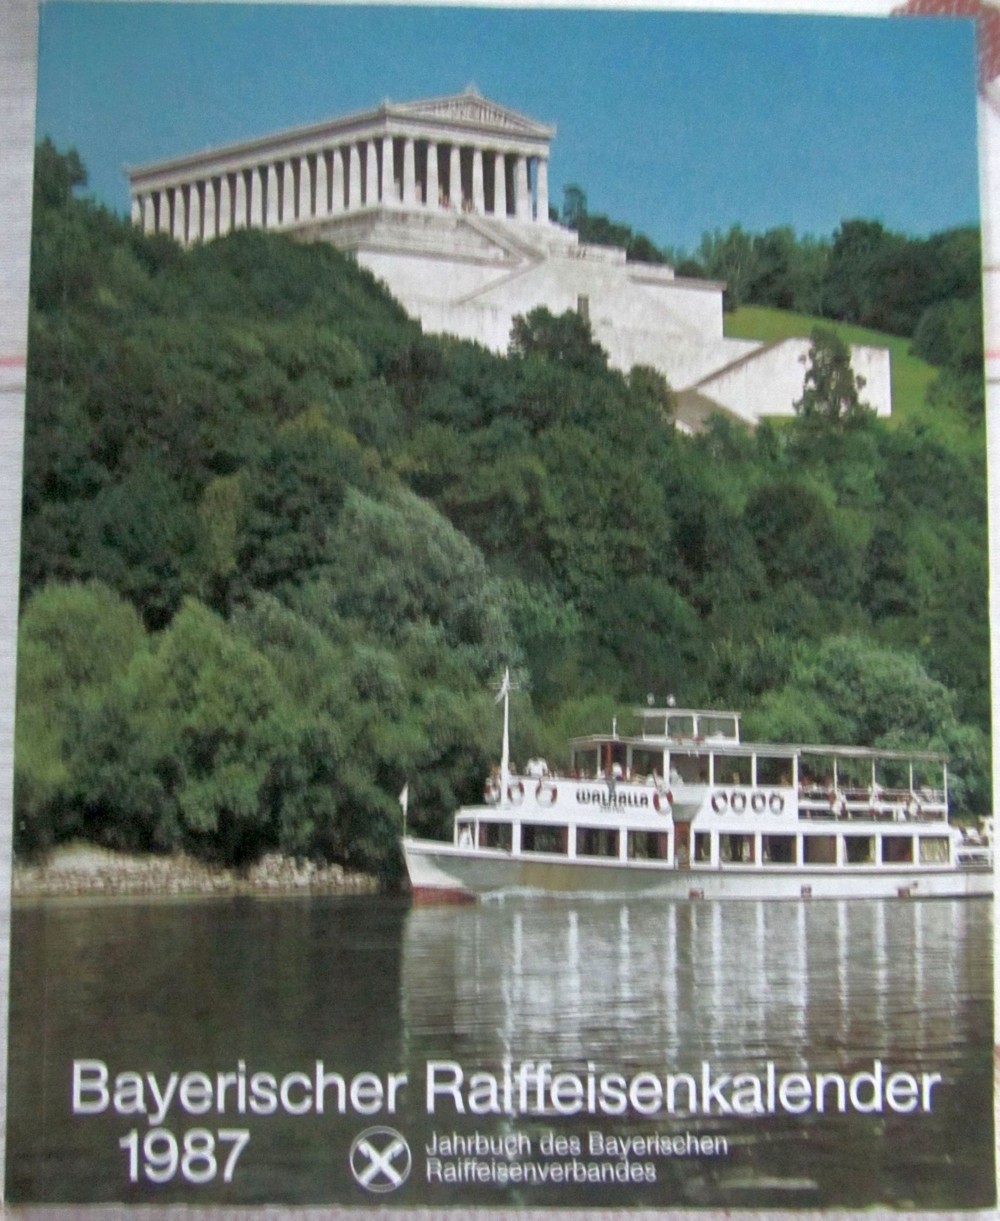 Kalender Bayer. Raiffeisenkalender 1987 Gelegenheit, vergriffen ! Klimaforschung